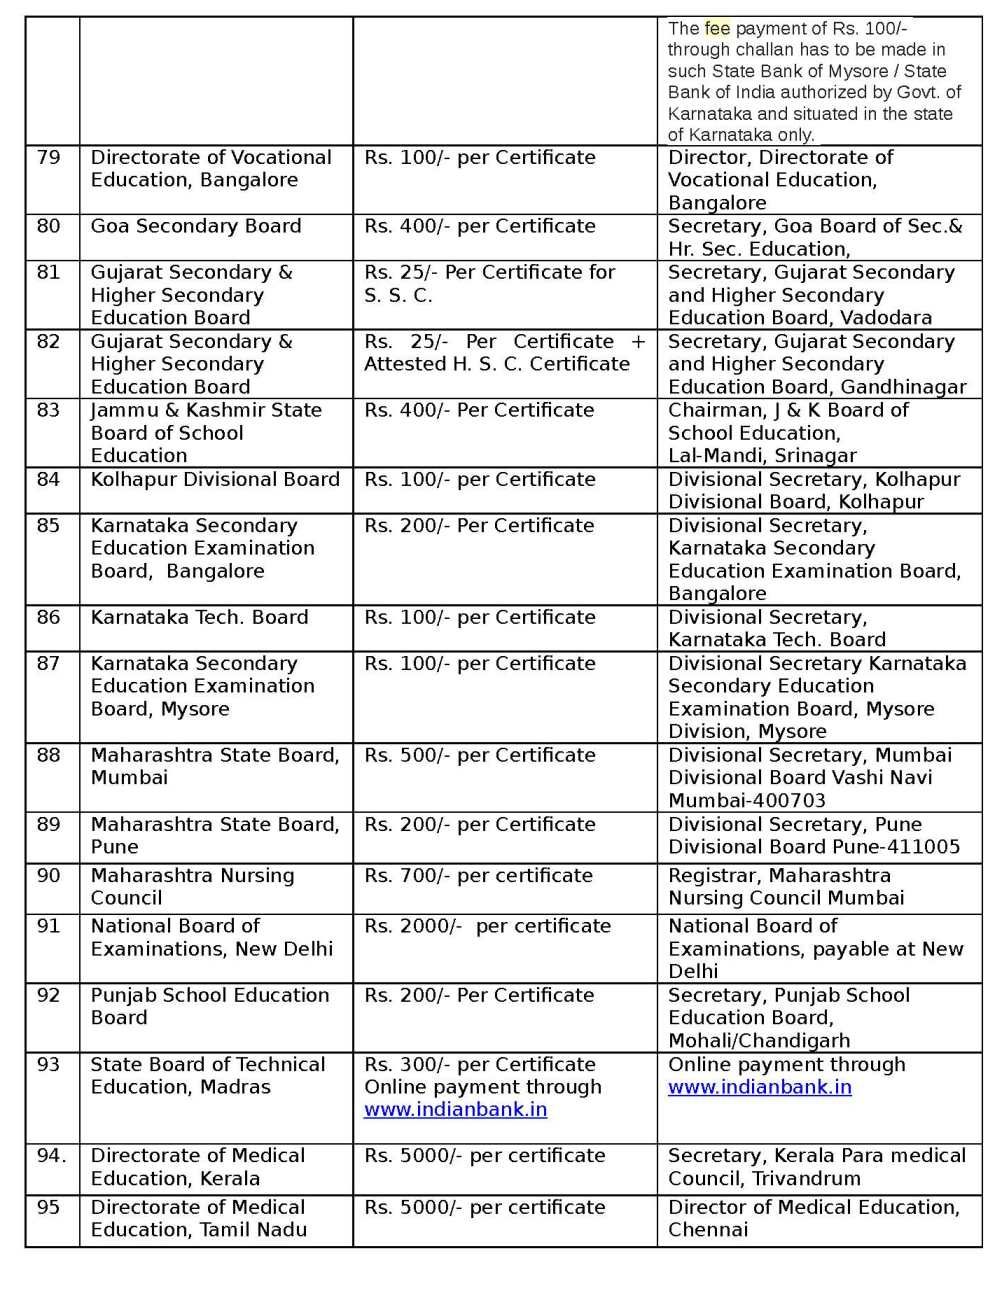 m.phil thesis submission form bharathiar university